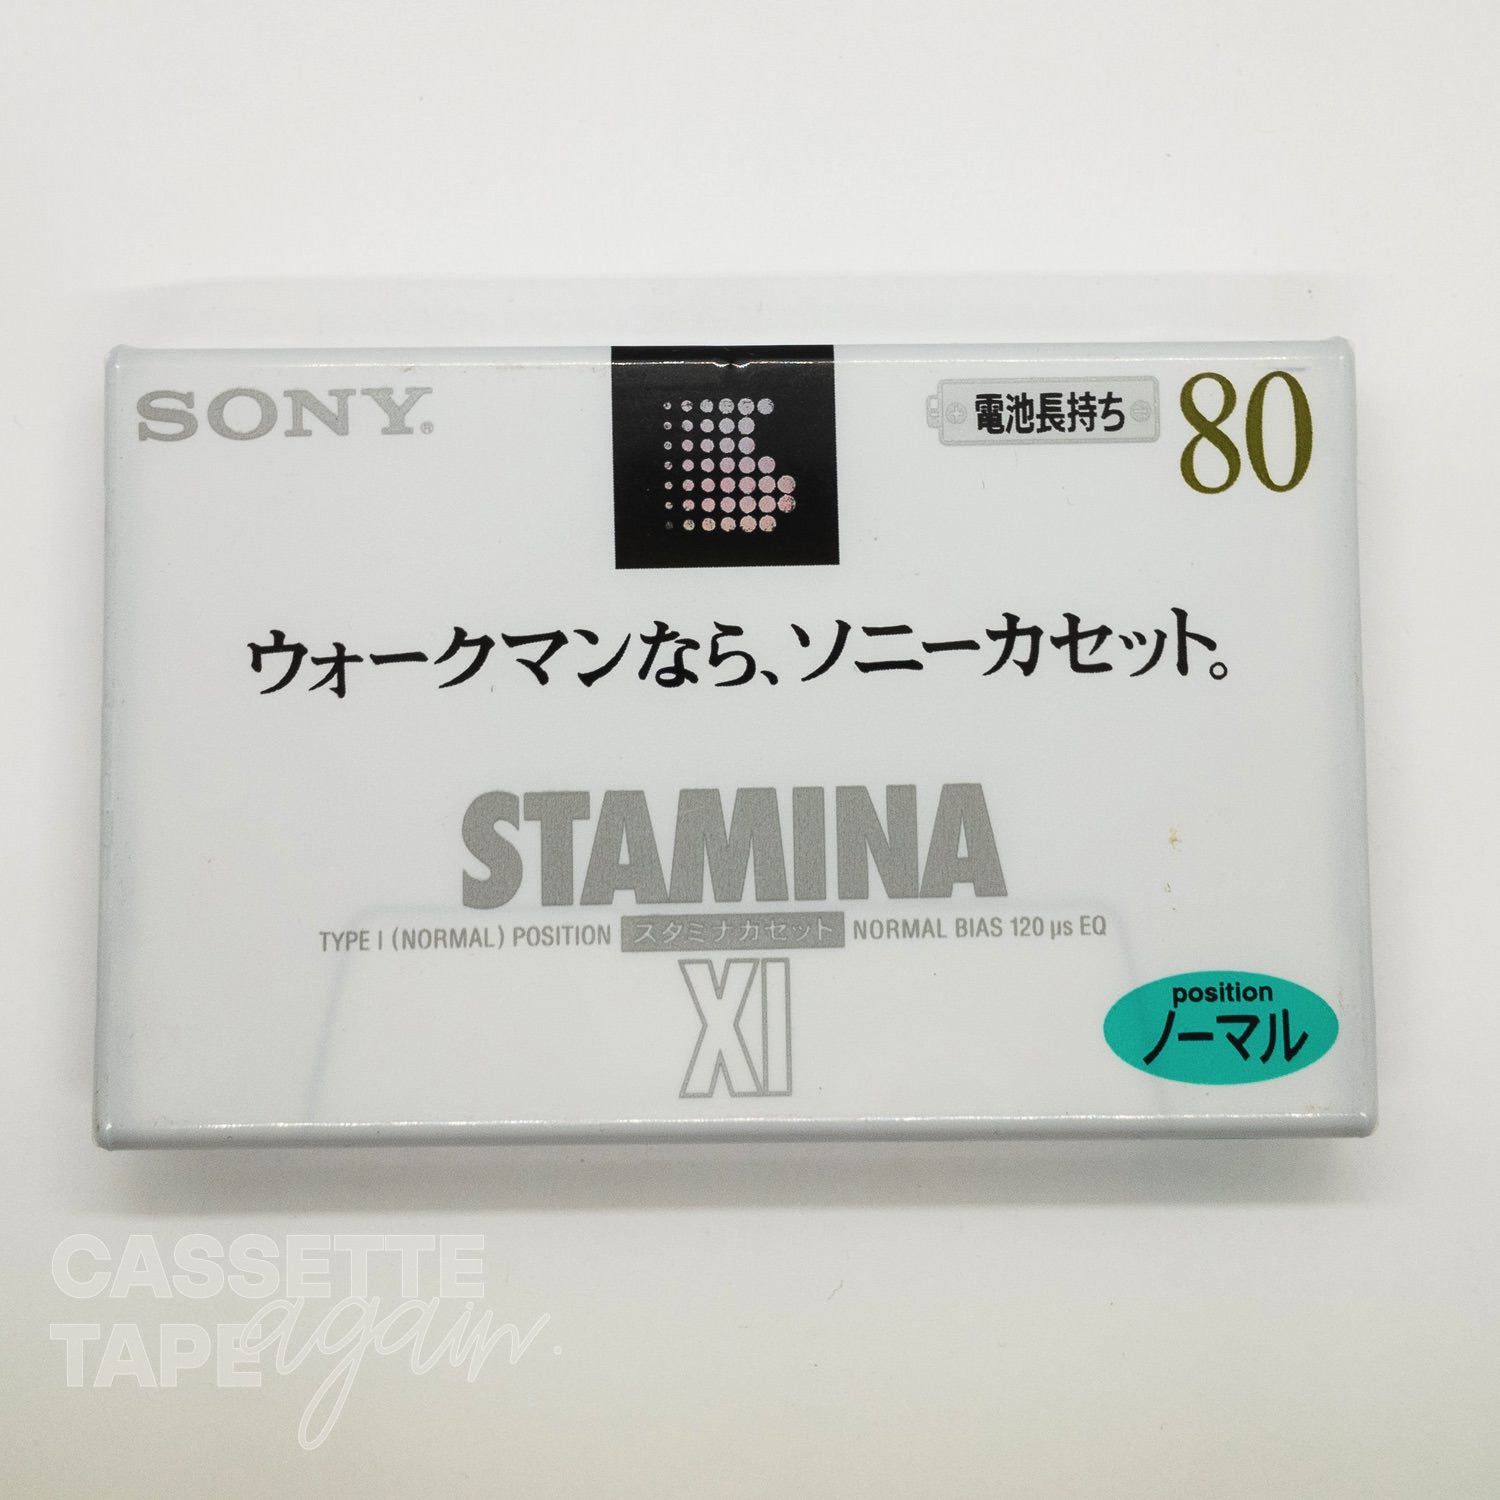 X I 80 / SONY(ノーマル)